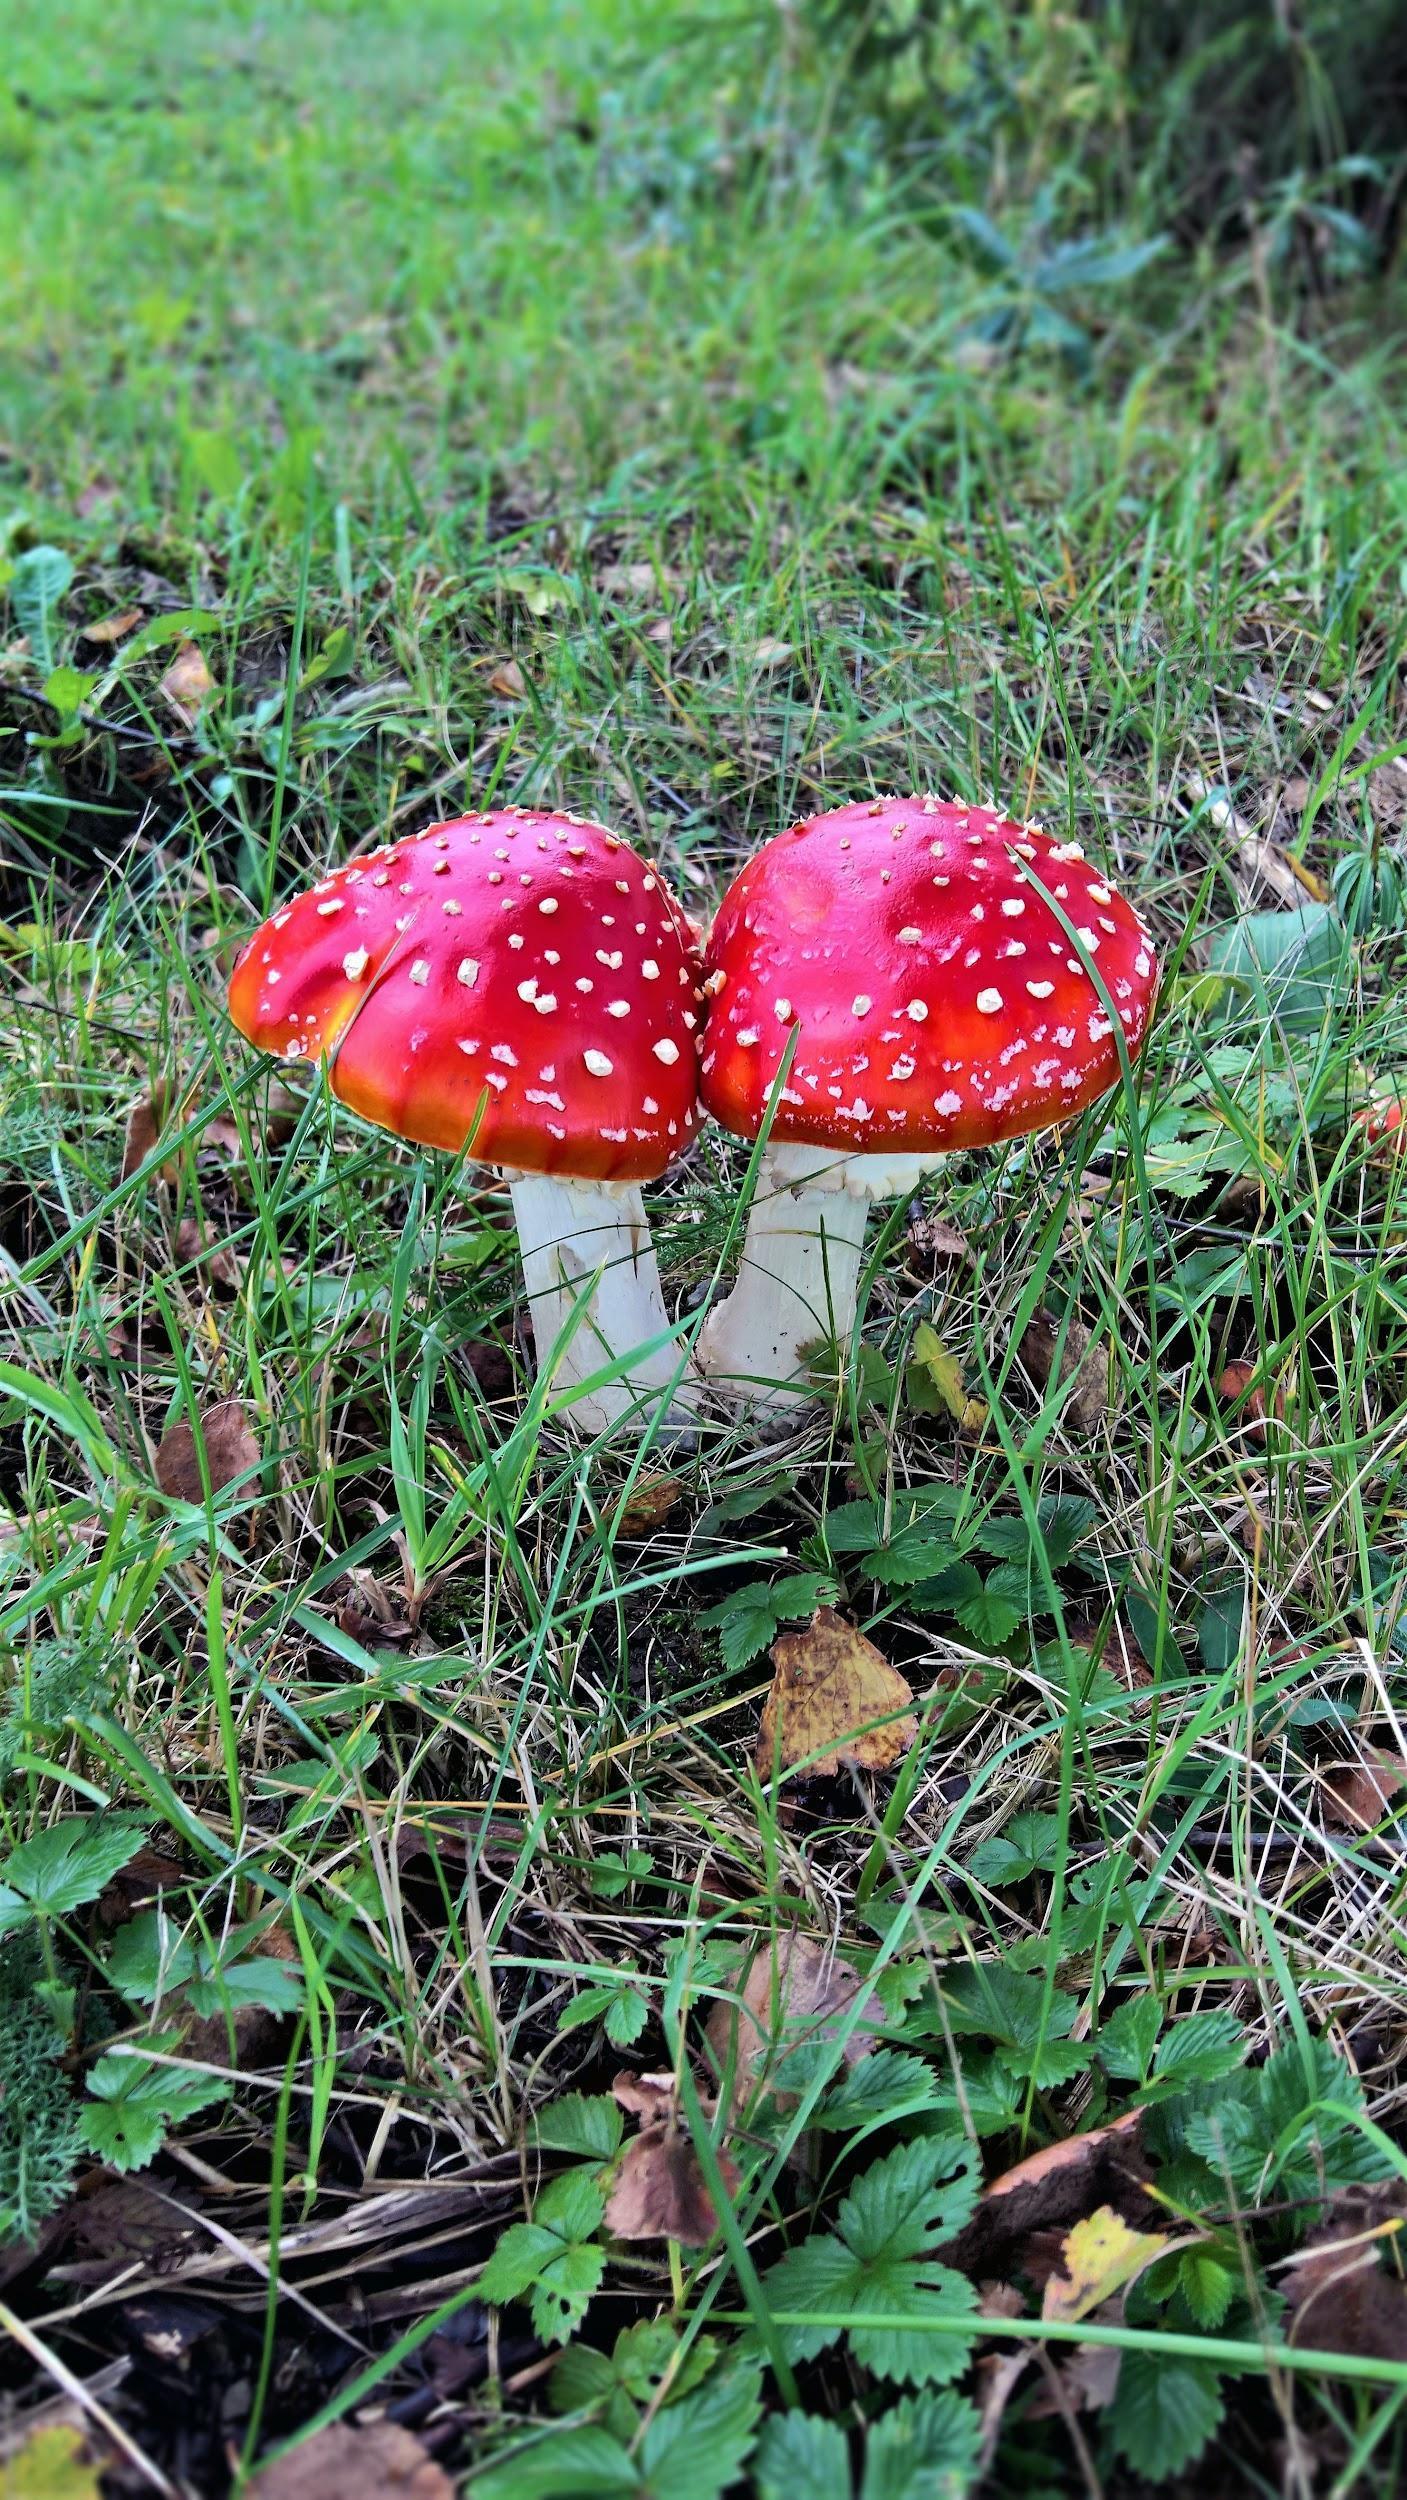 Cute and beautiful mushrooms.